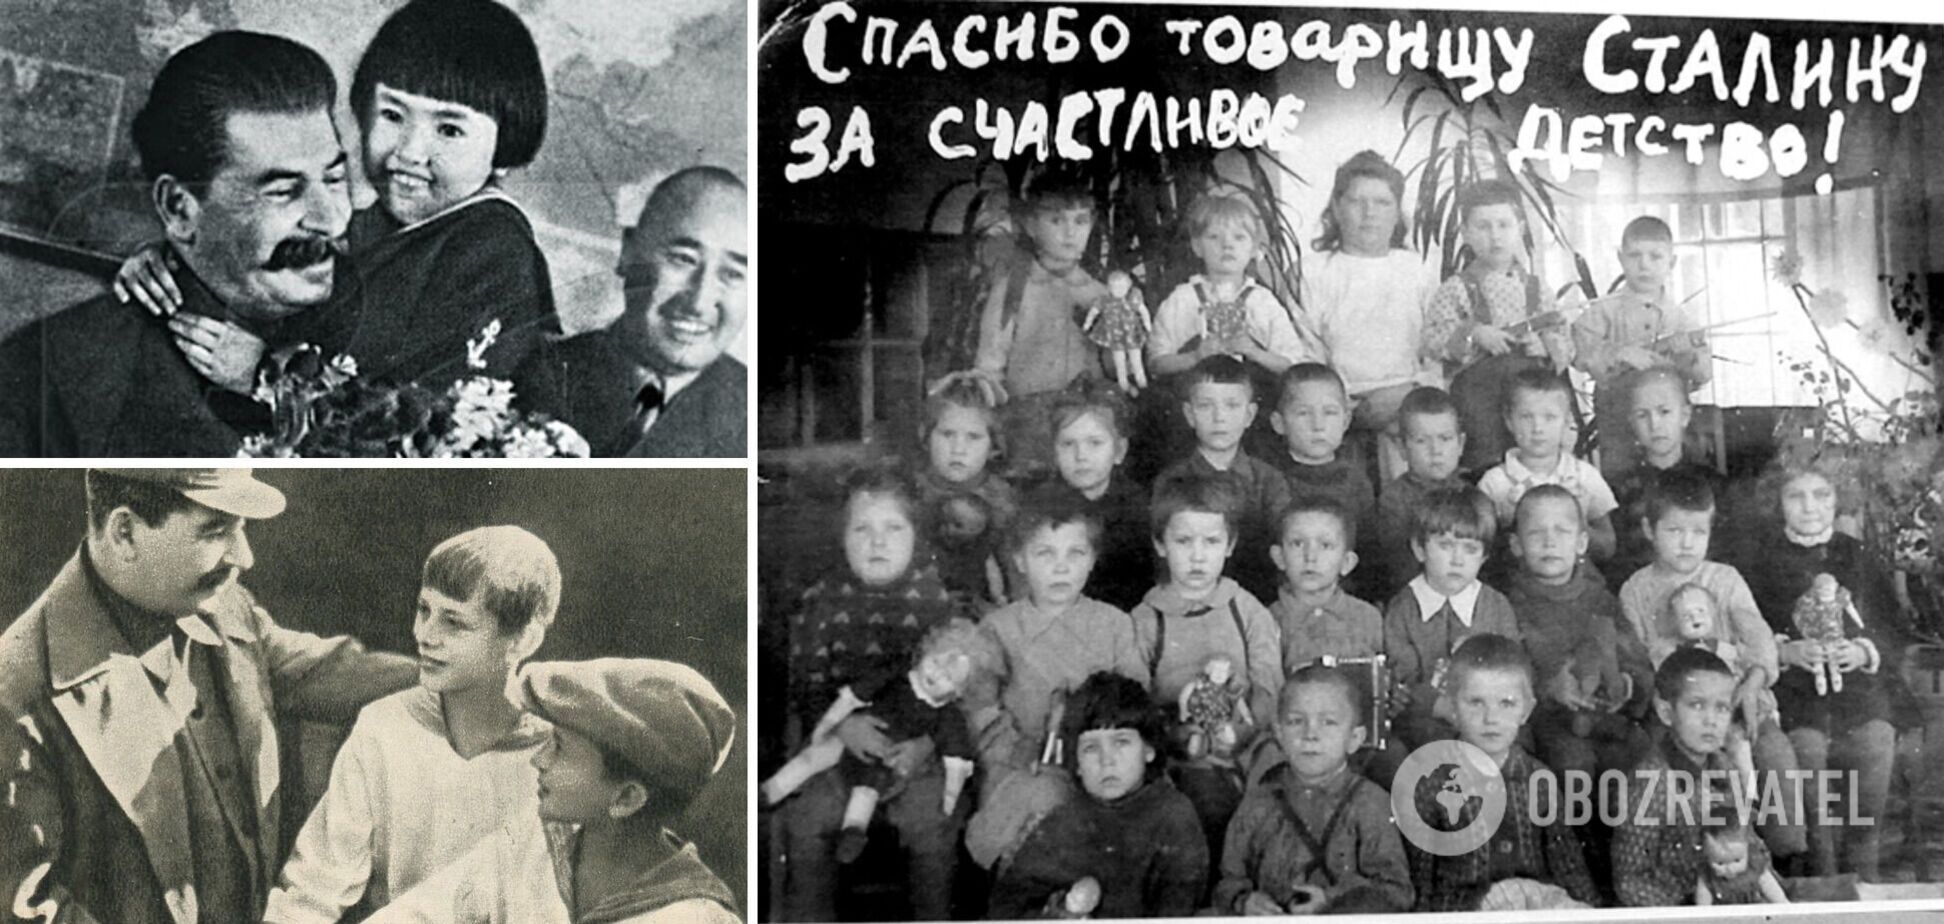 'Друг детей товарищ Сталин': что скрывала эта чудовищная ложь